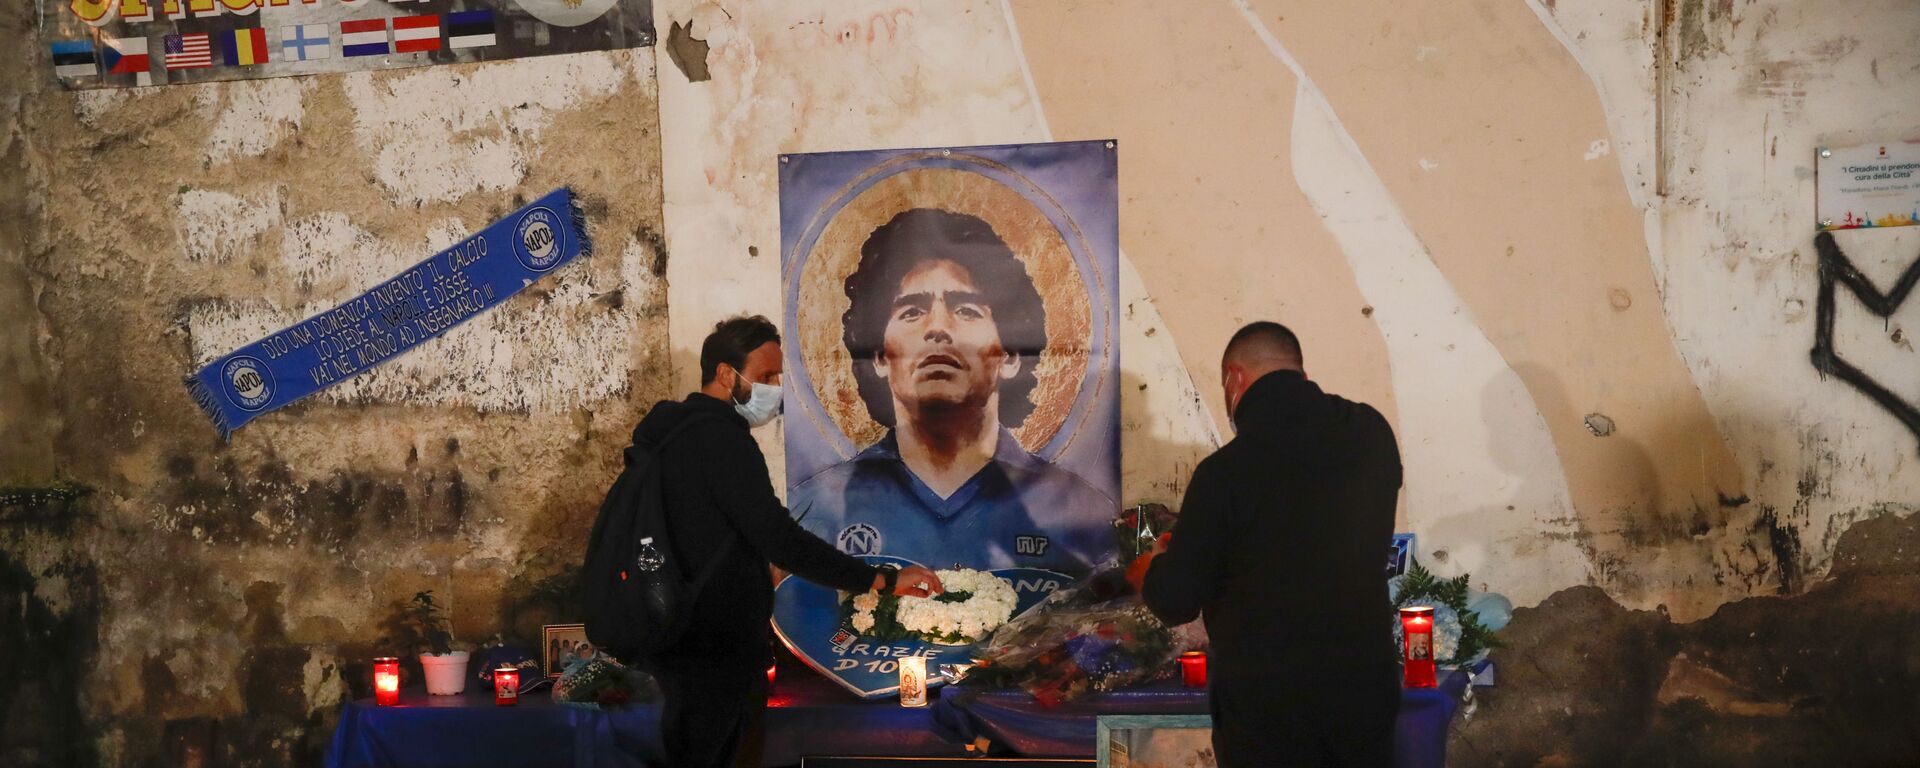 Mọi người thắp nến tưởng nhớ huyền thoại bóng đá Diego Maradona tại Quartieri Spagnoli ở Naples - Sputnik Việt Nam, 1920, 20.05.2021